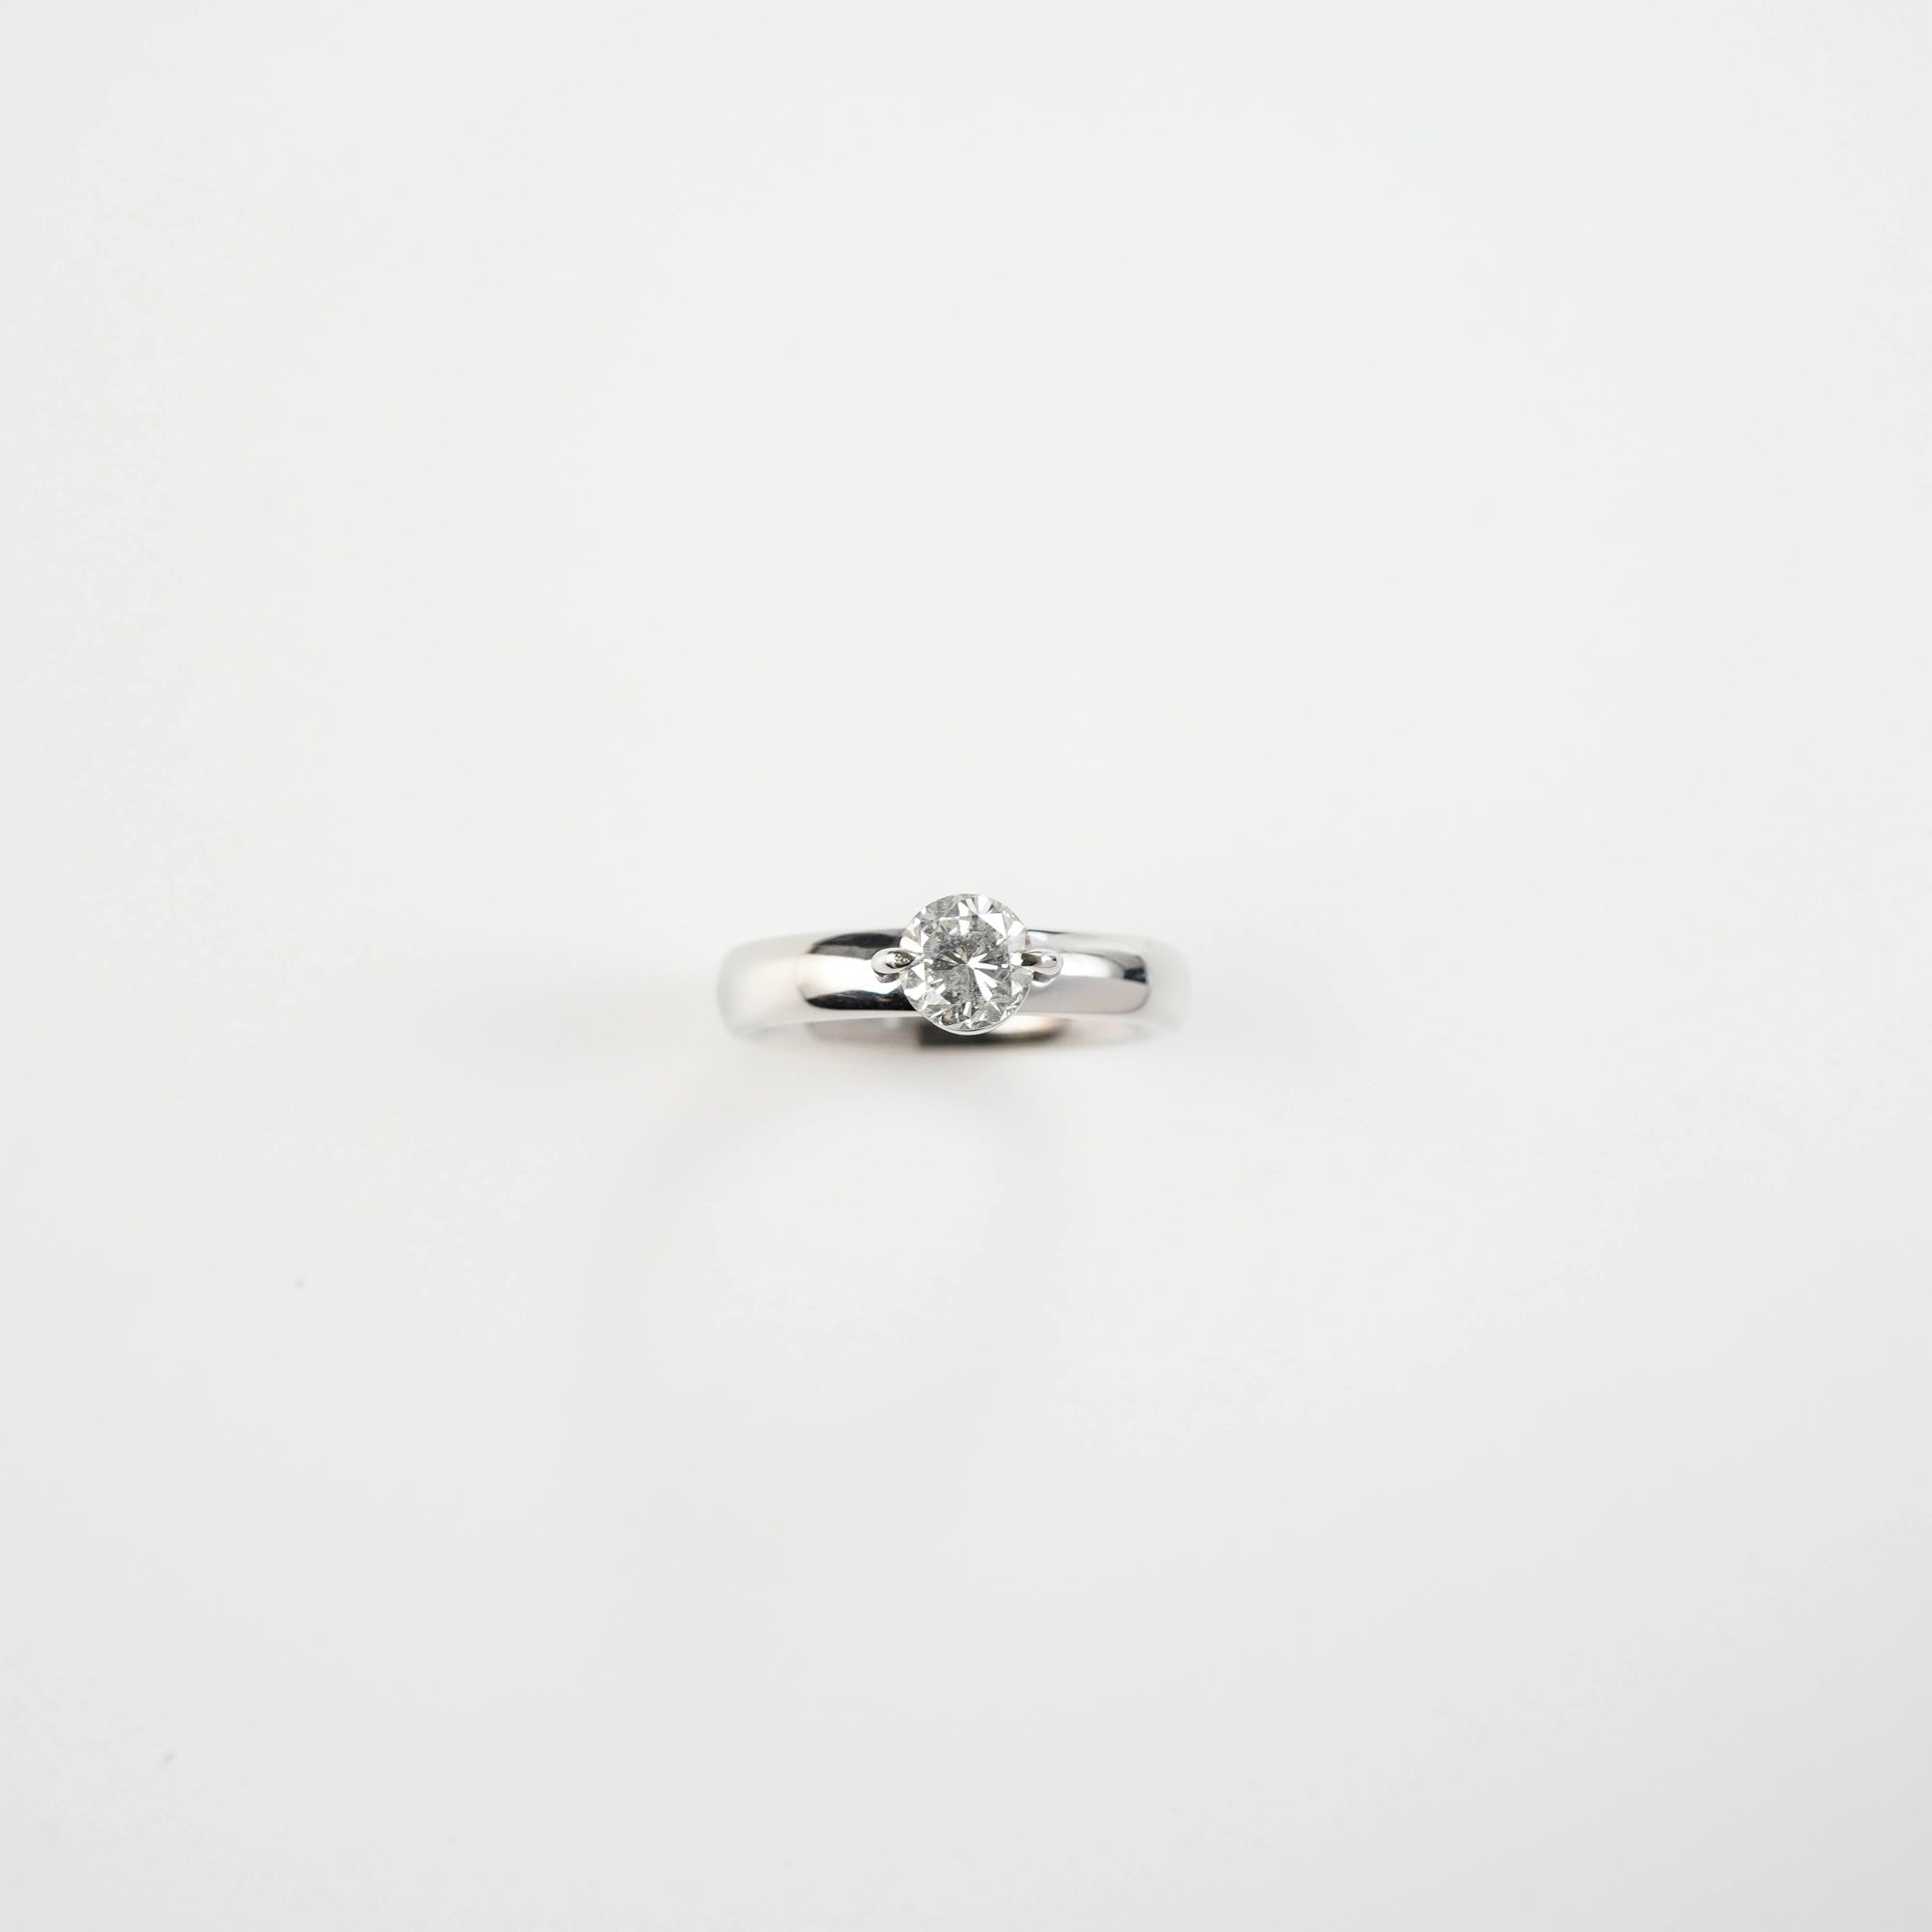 Produktfotografie des Weißgold-Solitaire-Rings mit einem 1,10 Carat Diamanten aus der Schmuckatelier Lang Collection mit einem Blickwinkel der Draufsicht